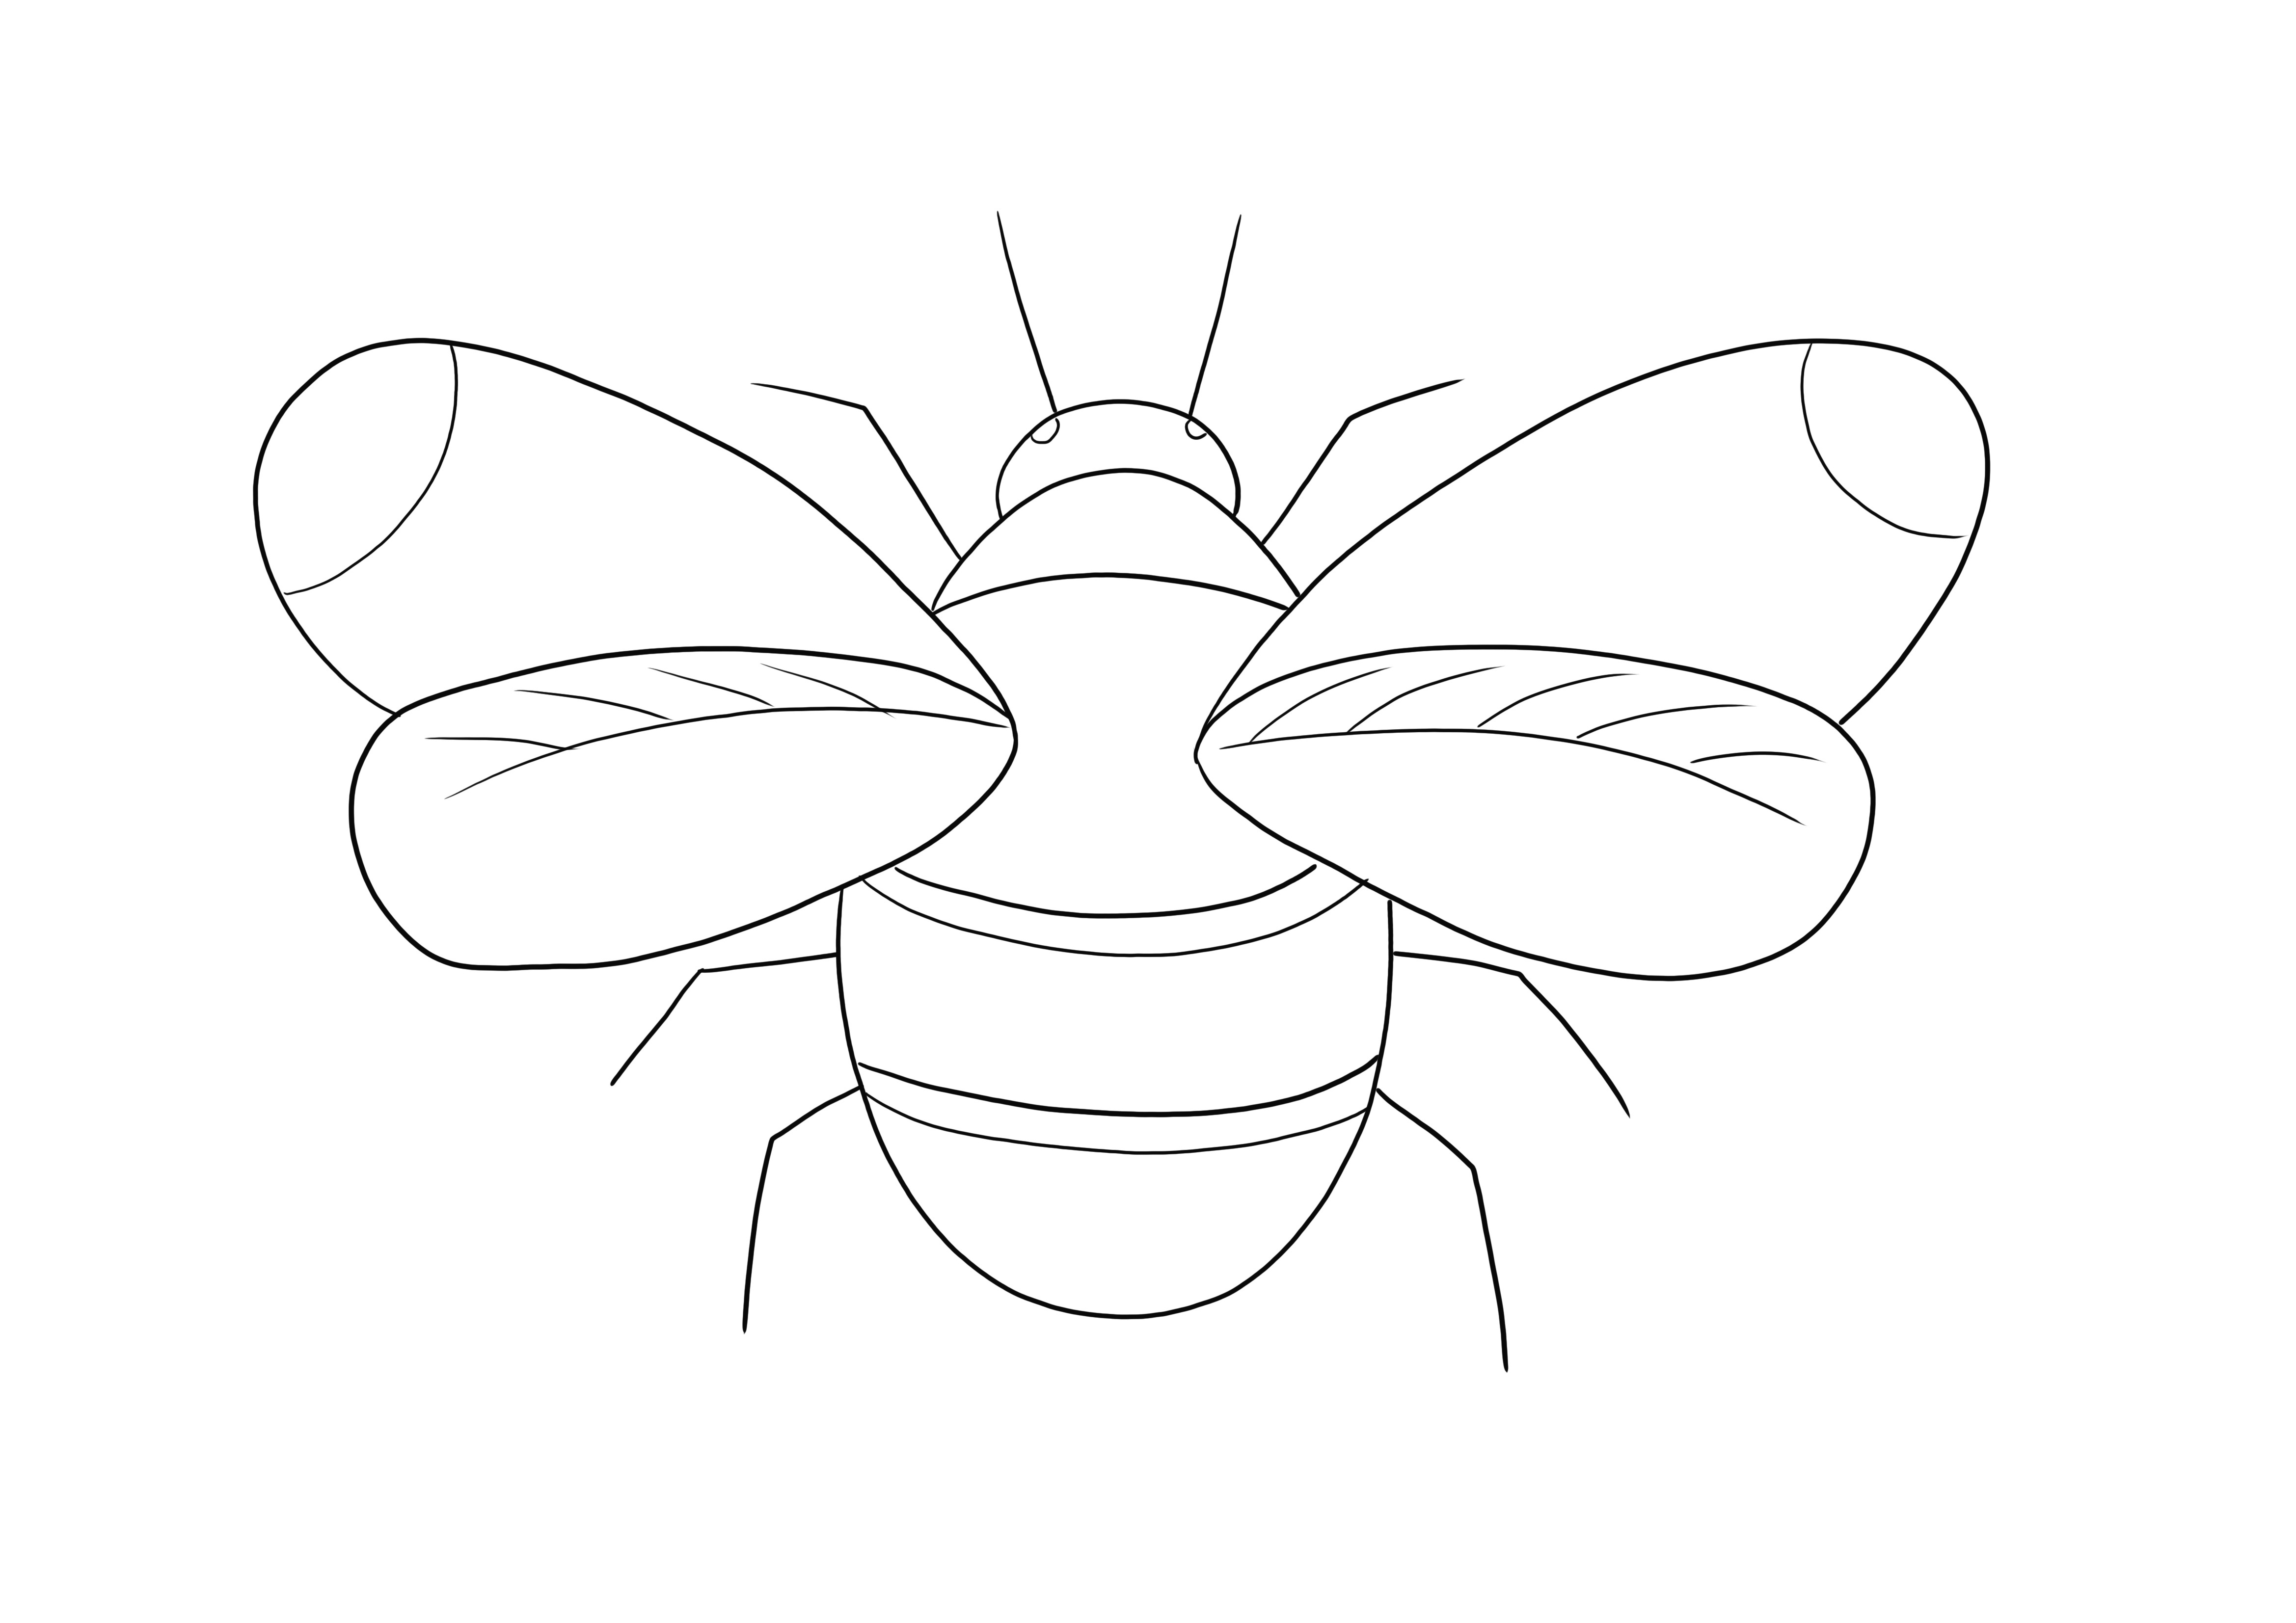 A Bumblebee színezőlap ingyenesen letölthető vagy kinyomtatható és kiszínezhető